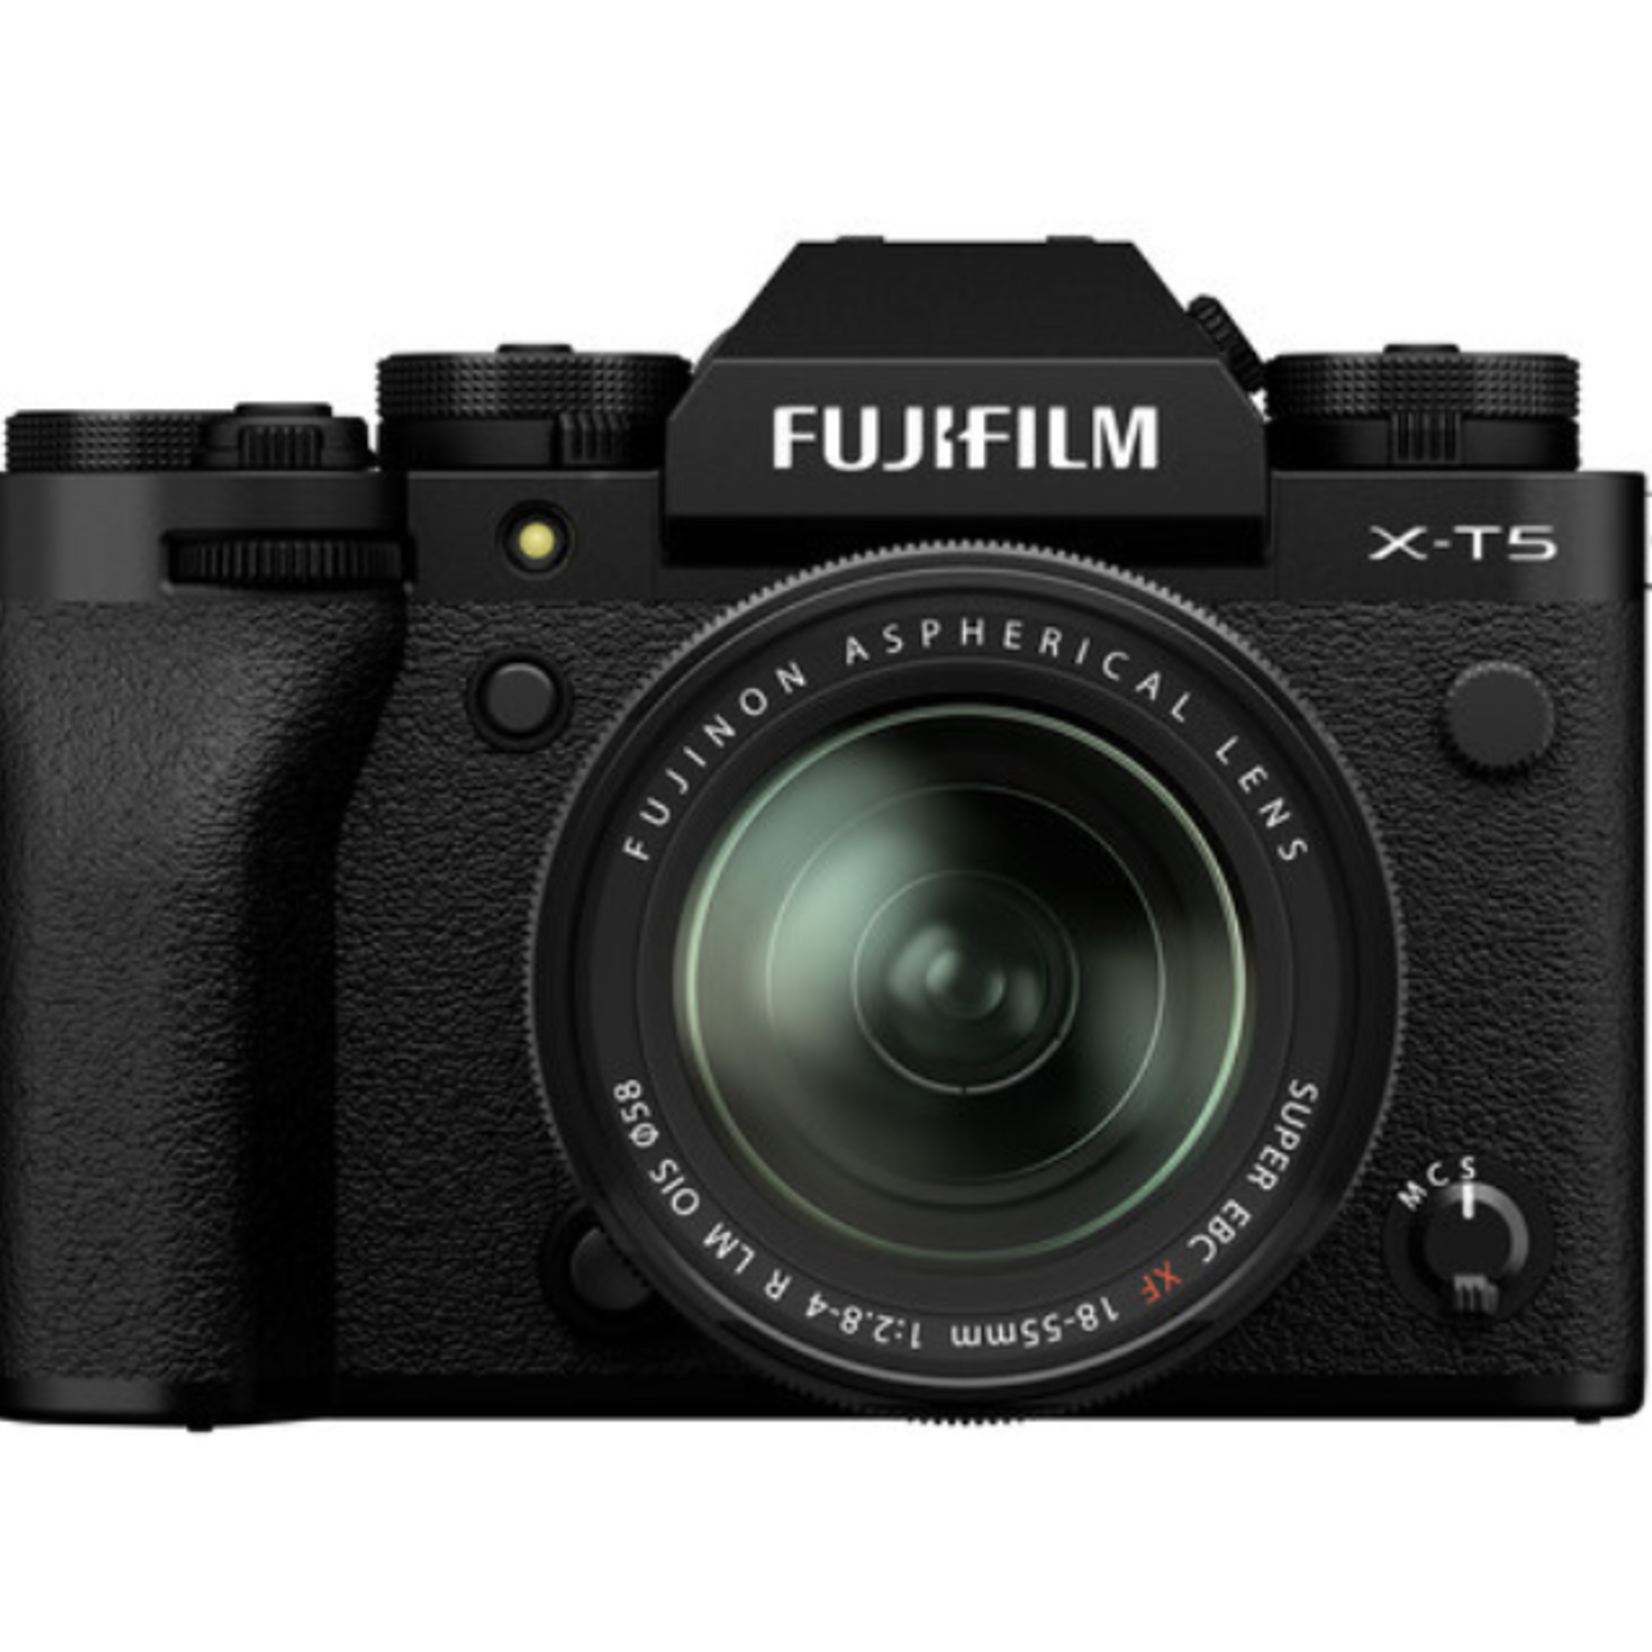 FujiFilm Fujifilm X-T5 XF18-55mm Kit Black